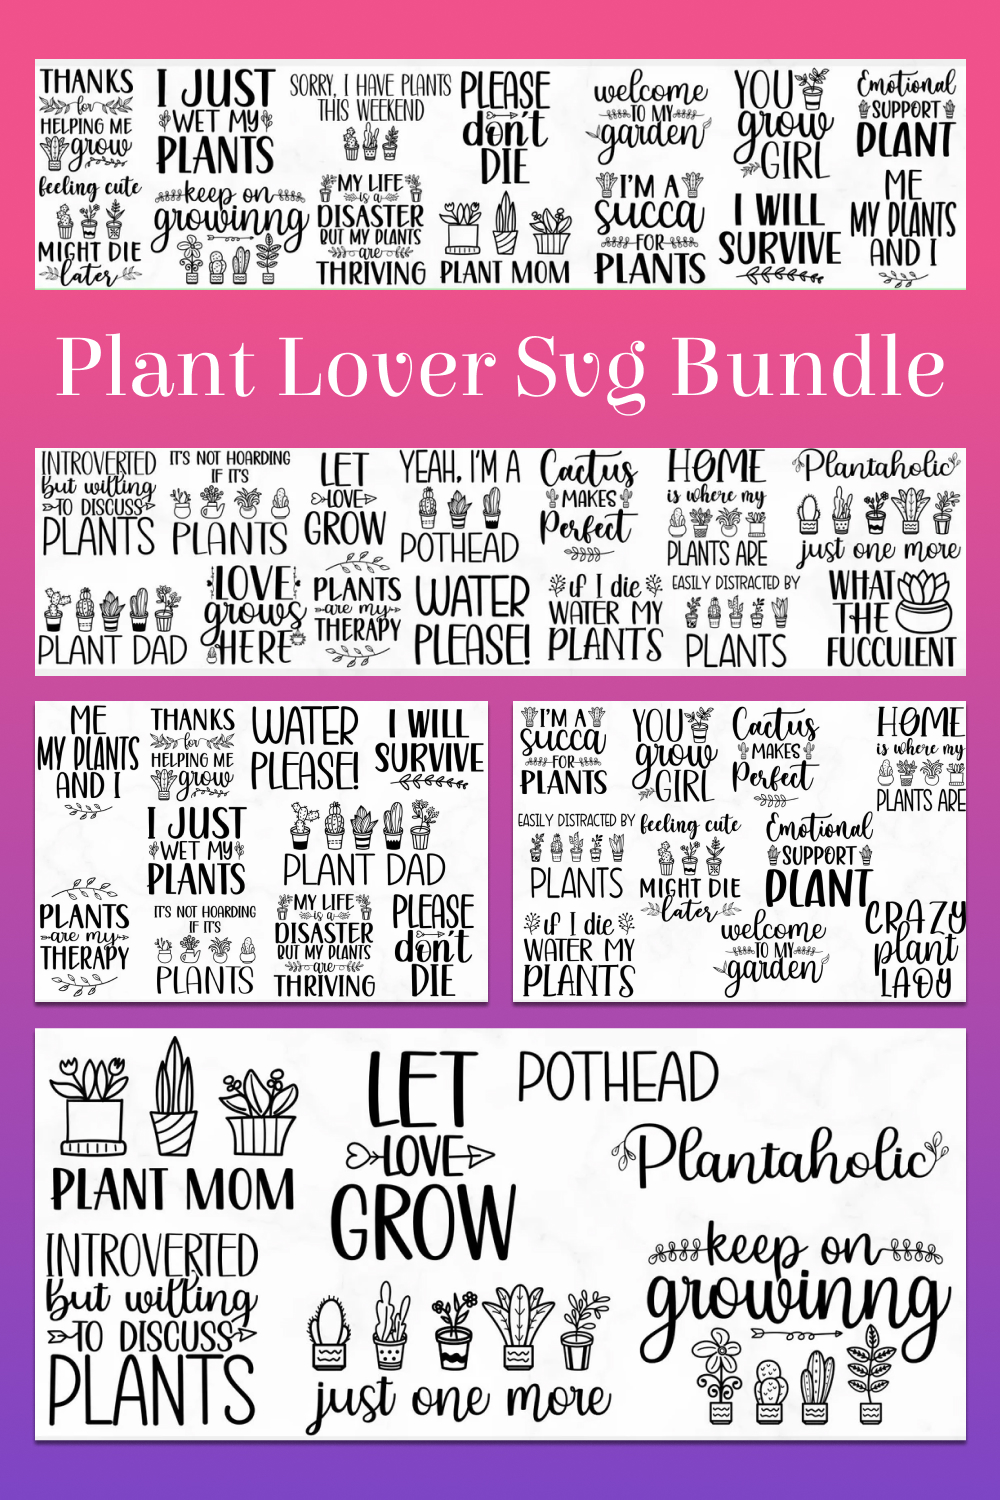 Plant lover svg bundle of pinterest.